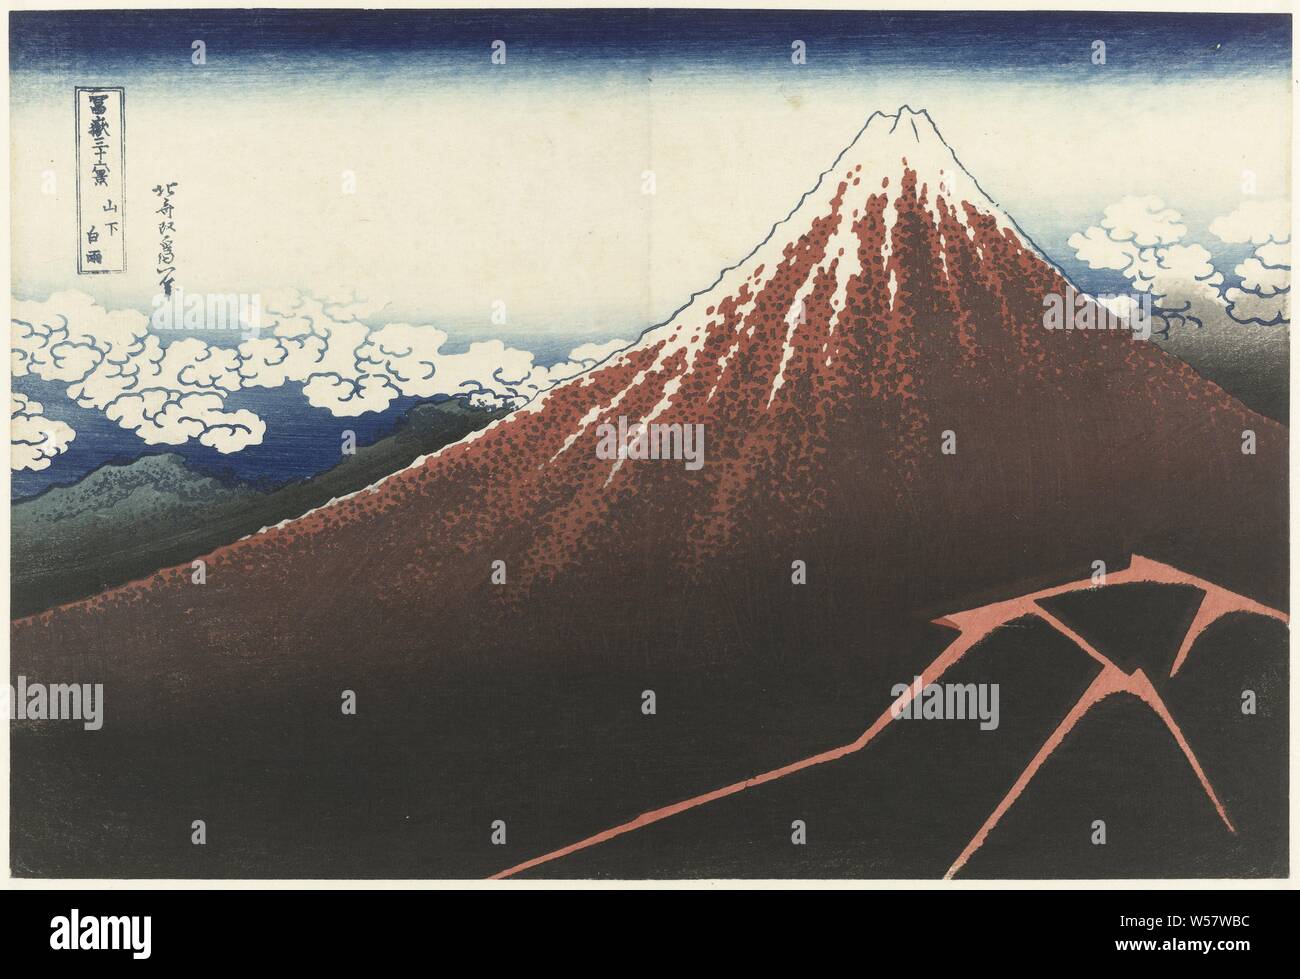 Regen Sturm am Fuße des Mount Fuji Sanka hakuu (Titel auf Objekt) 36 Blick auf Mount Fuji (Titel der Serie) Fuji sanjurokkei (Titel der Serie auf Objekt), Blick auf Mount Fuji, rot mit weiß verschneiten Top und einem dunklen Fuß mit Blitze, ein Gebirgszug und Wolken im Hintergrund, Fuji, der Berg, Katsushika Hokusai (auf Objekt erwähnt), Japan, 1829-1833, Papier, Farbholzschnitt, H 254 mm x B 375 mm Stockfoto